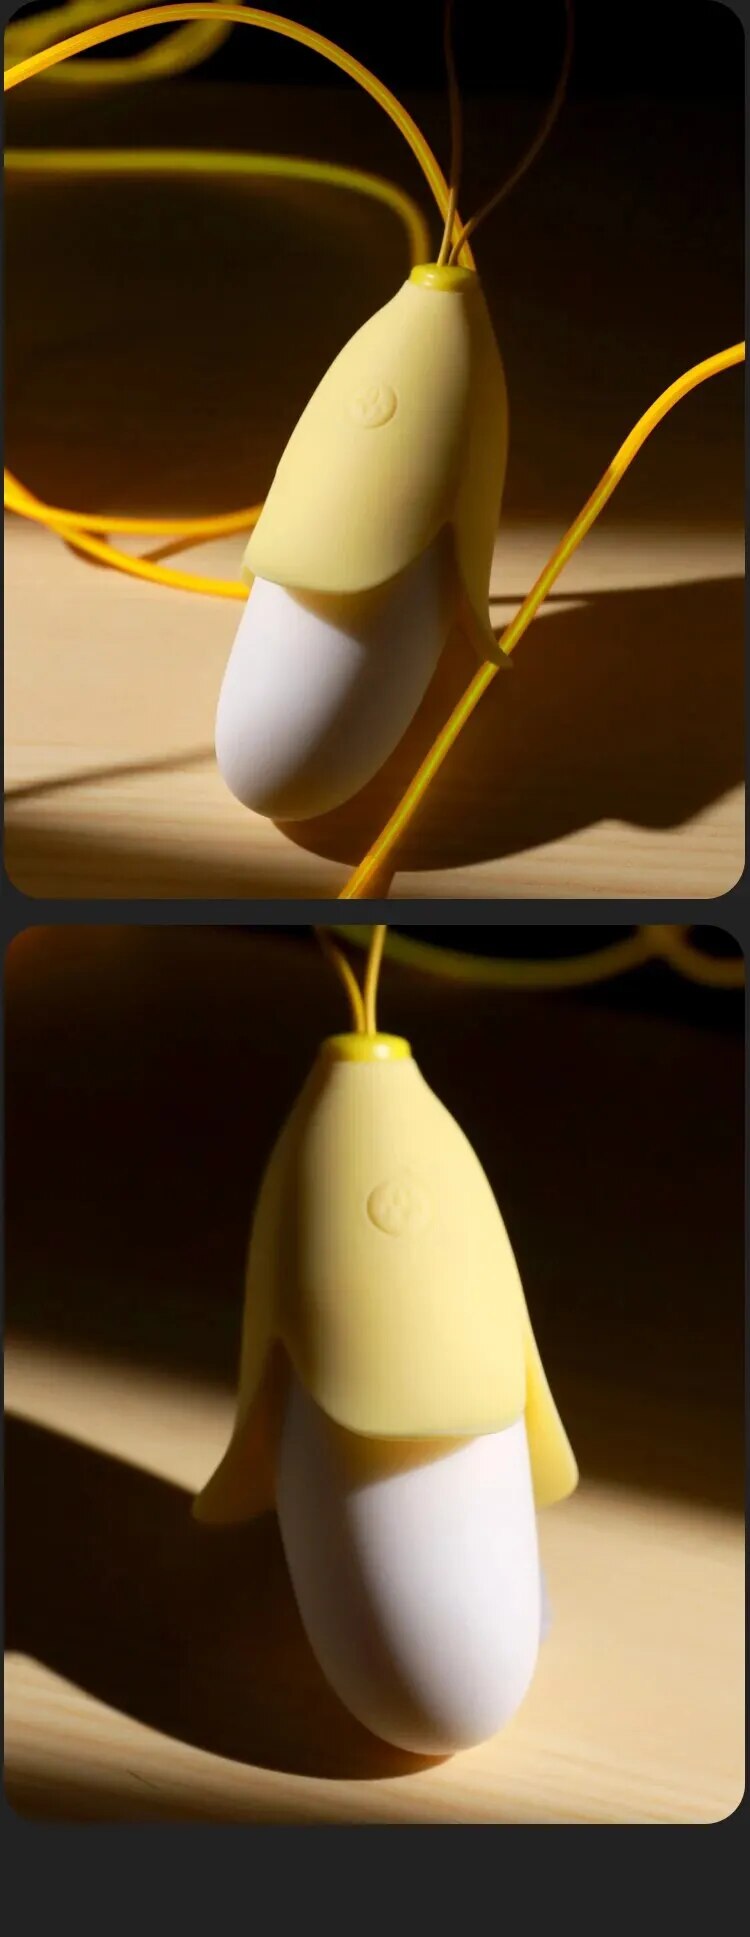  Nhập sỉ Trứng rung mini nhỏ gọn hình quả chuối vàng silicon siêu mềm hàng mới về